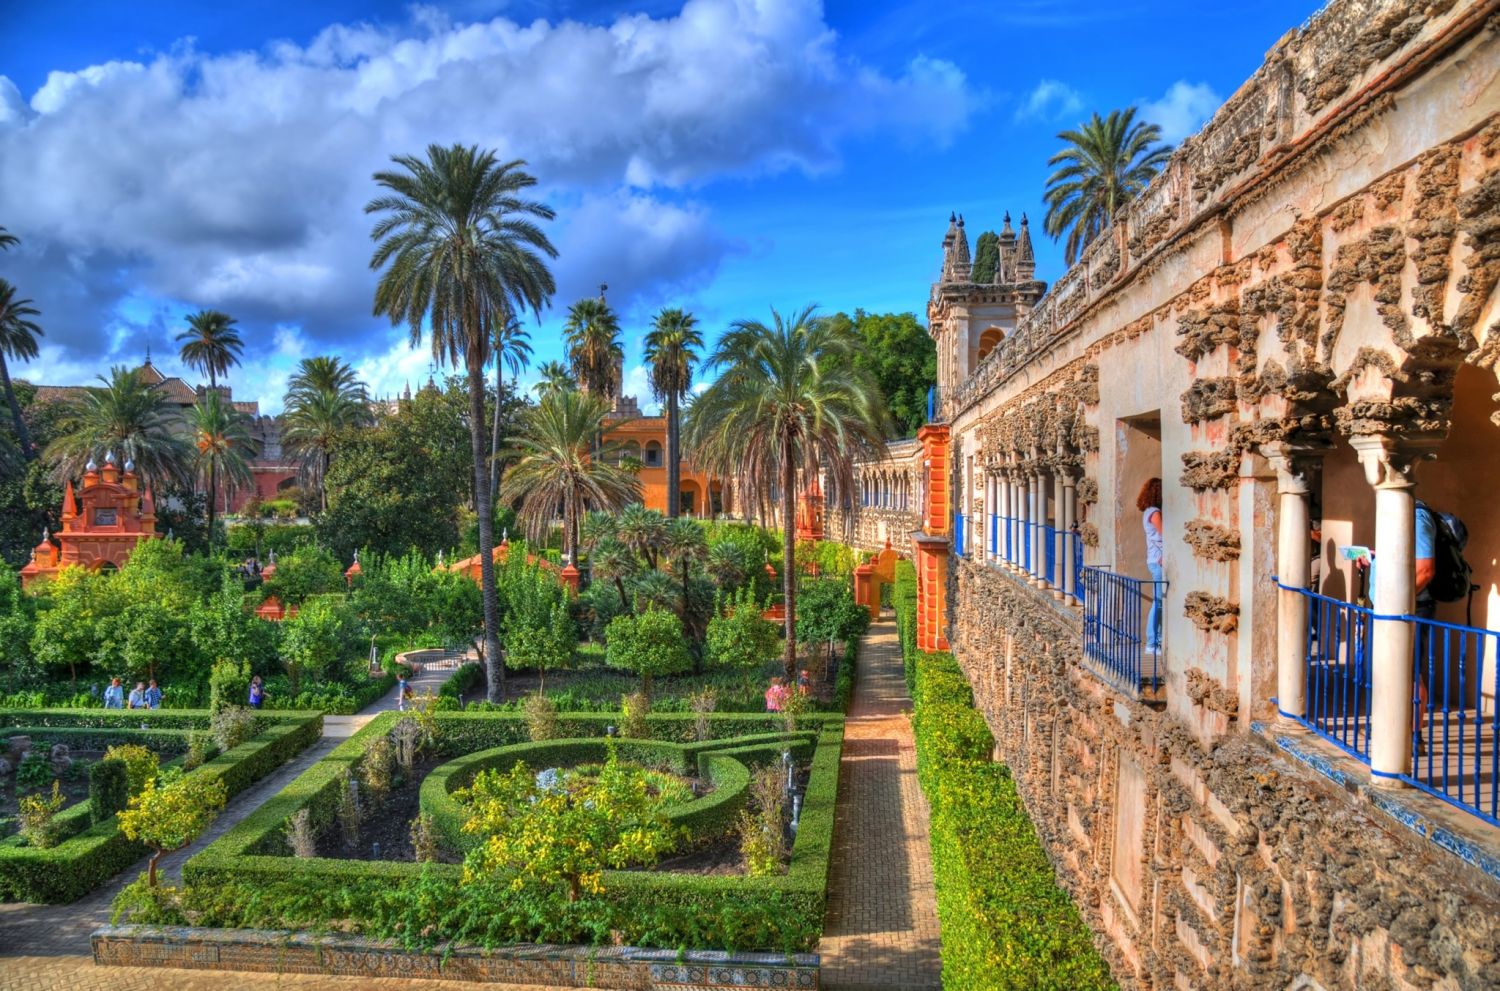 Historia de la Catedral de Sevilla